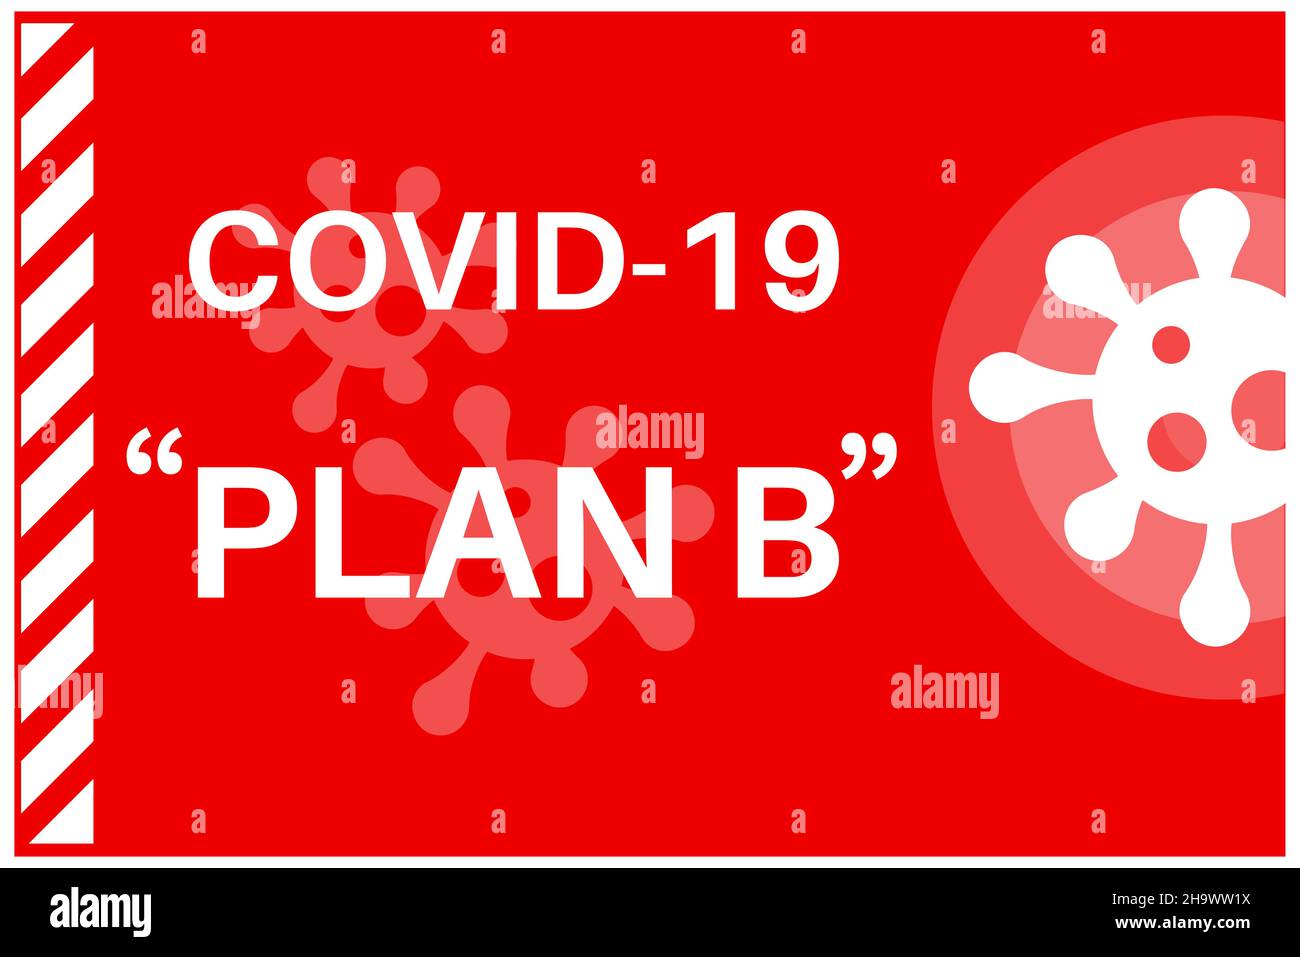 Niveau d'alerte 4 Covid-19 Omicron variante préoccupante - Illustration avec logo de virus sur fond rouge. Illustration de Vecteur